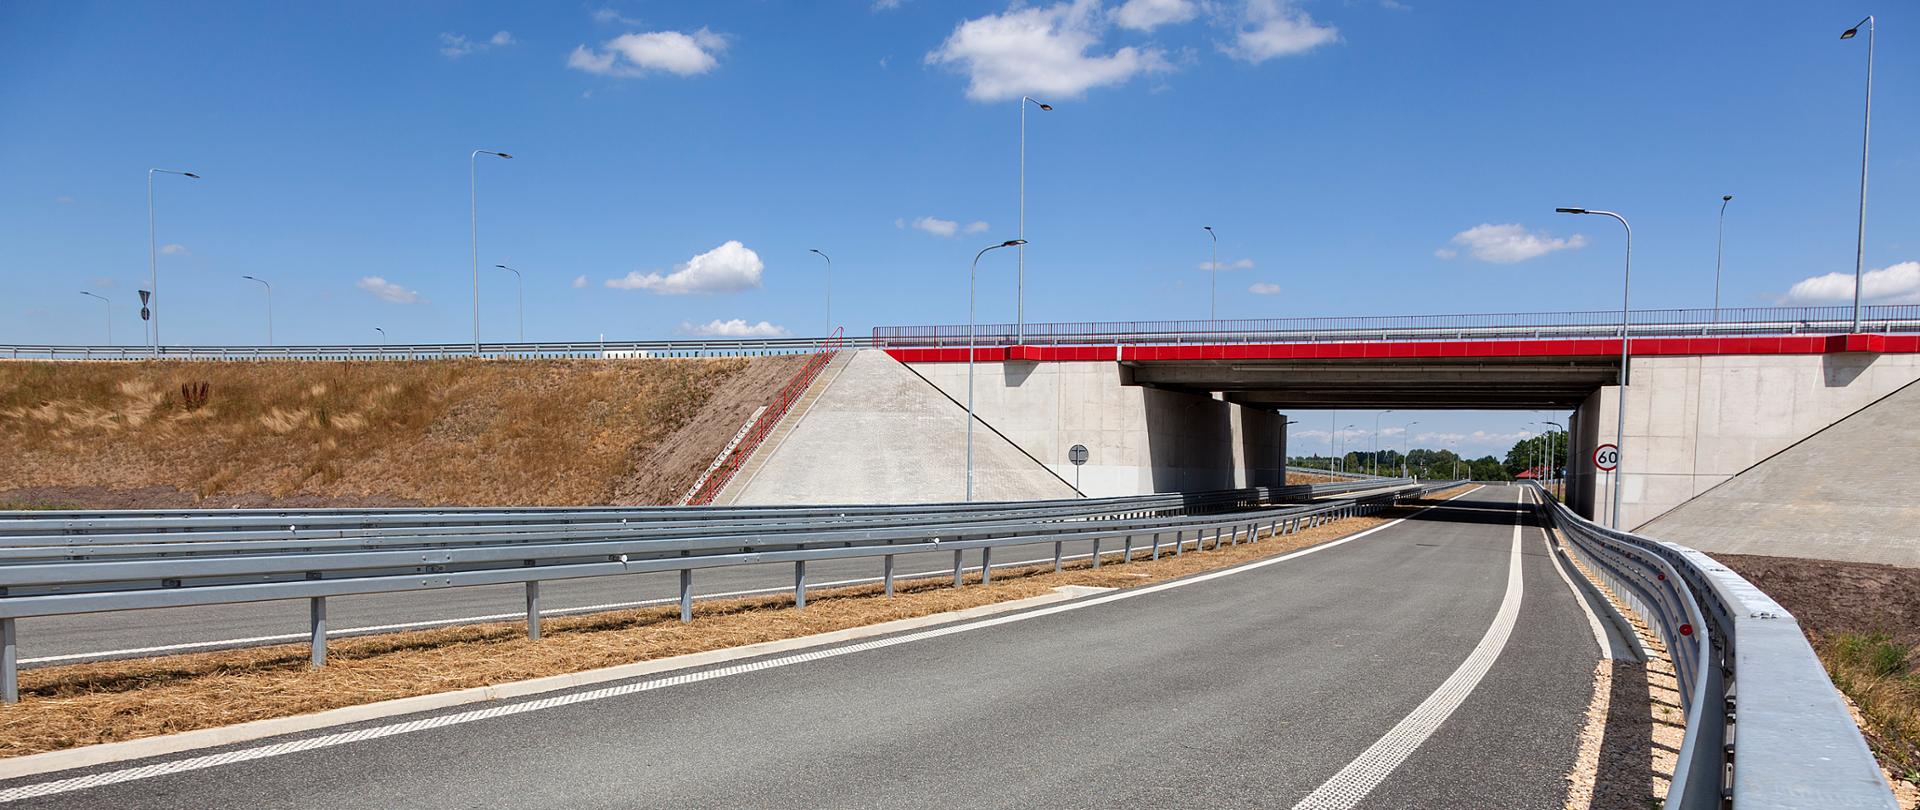 Fotografia wiaduktu drogowego pod autostradą A1. Belki gzymsowe obiektu i poręcze wykonano w kolorze czerwonym.